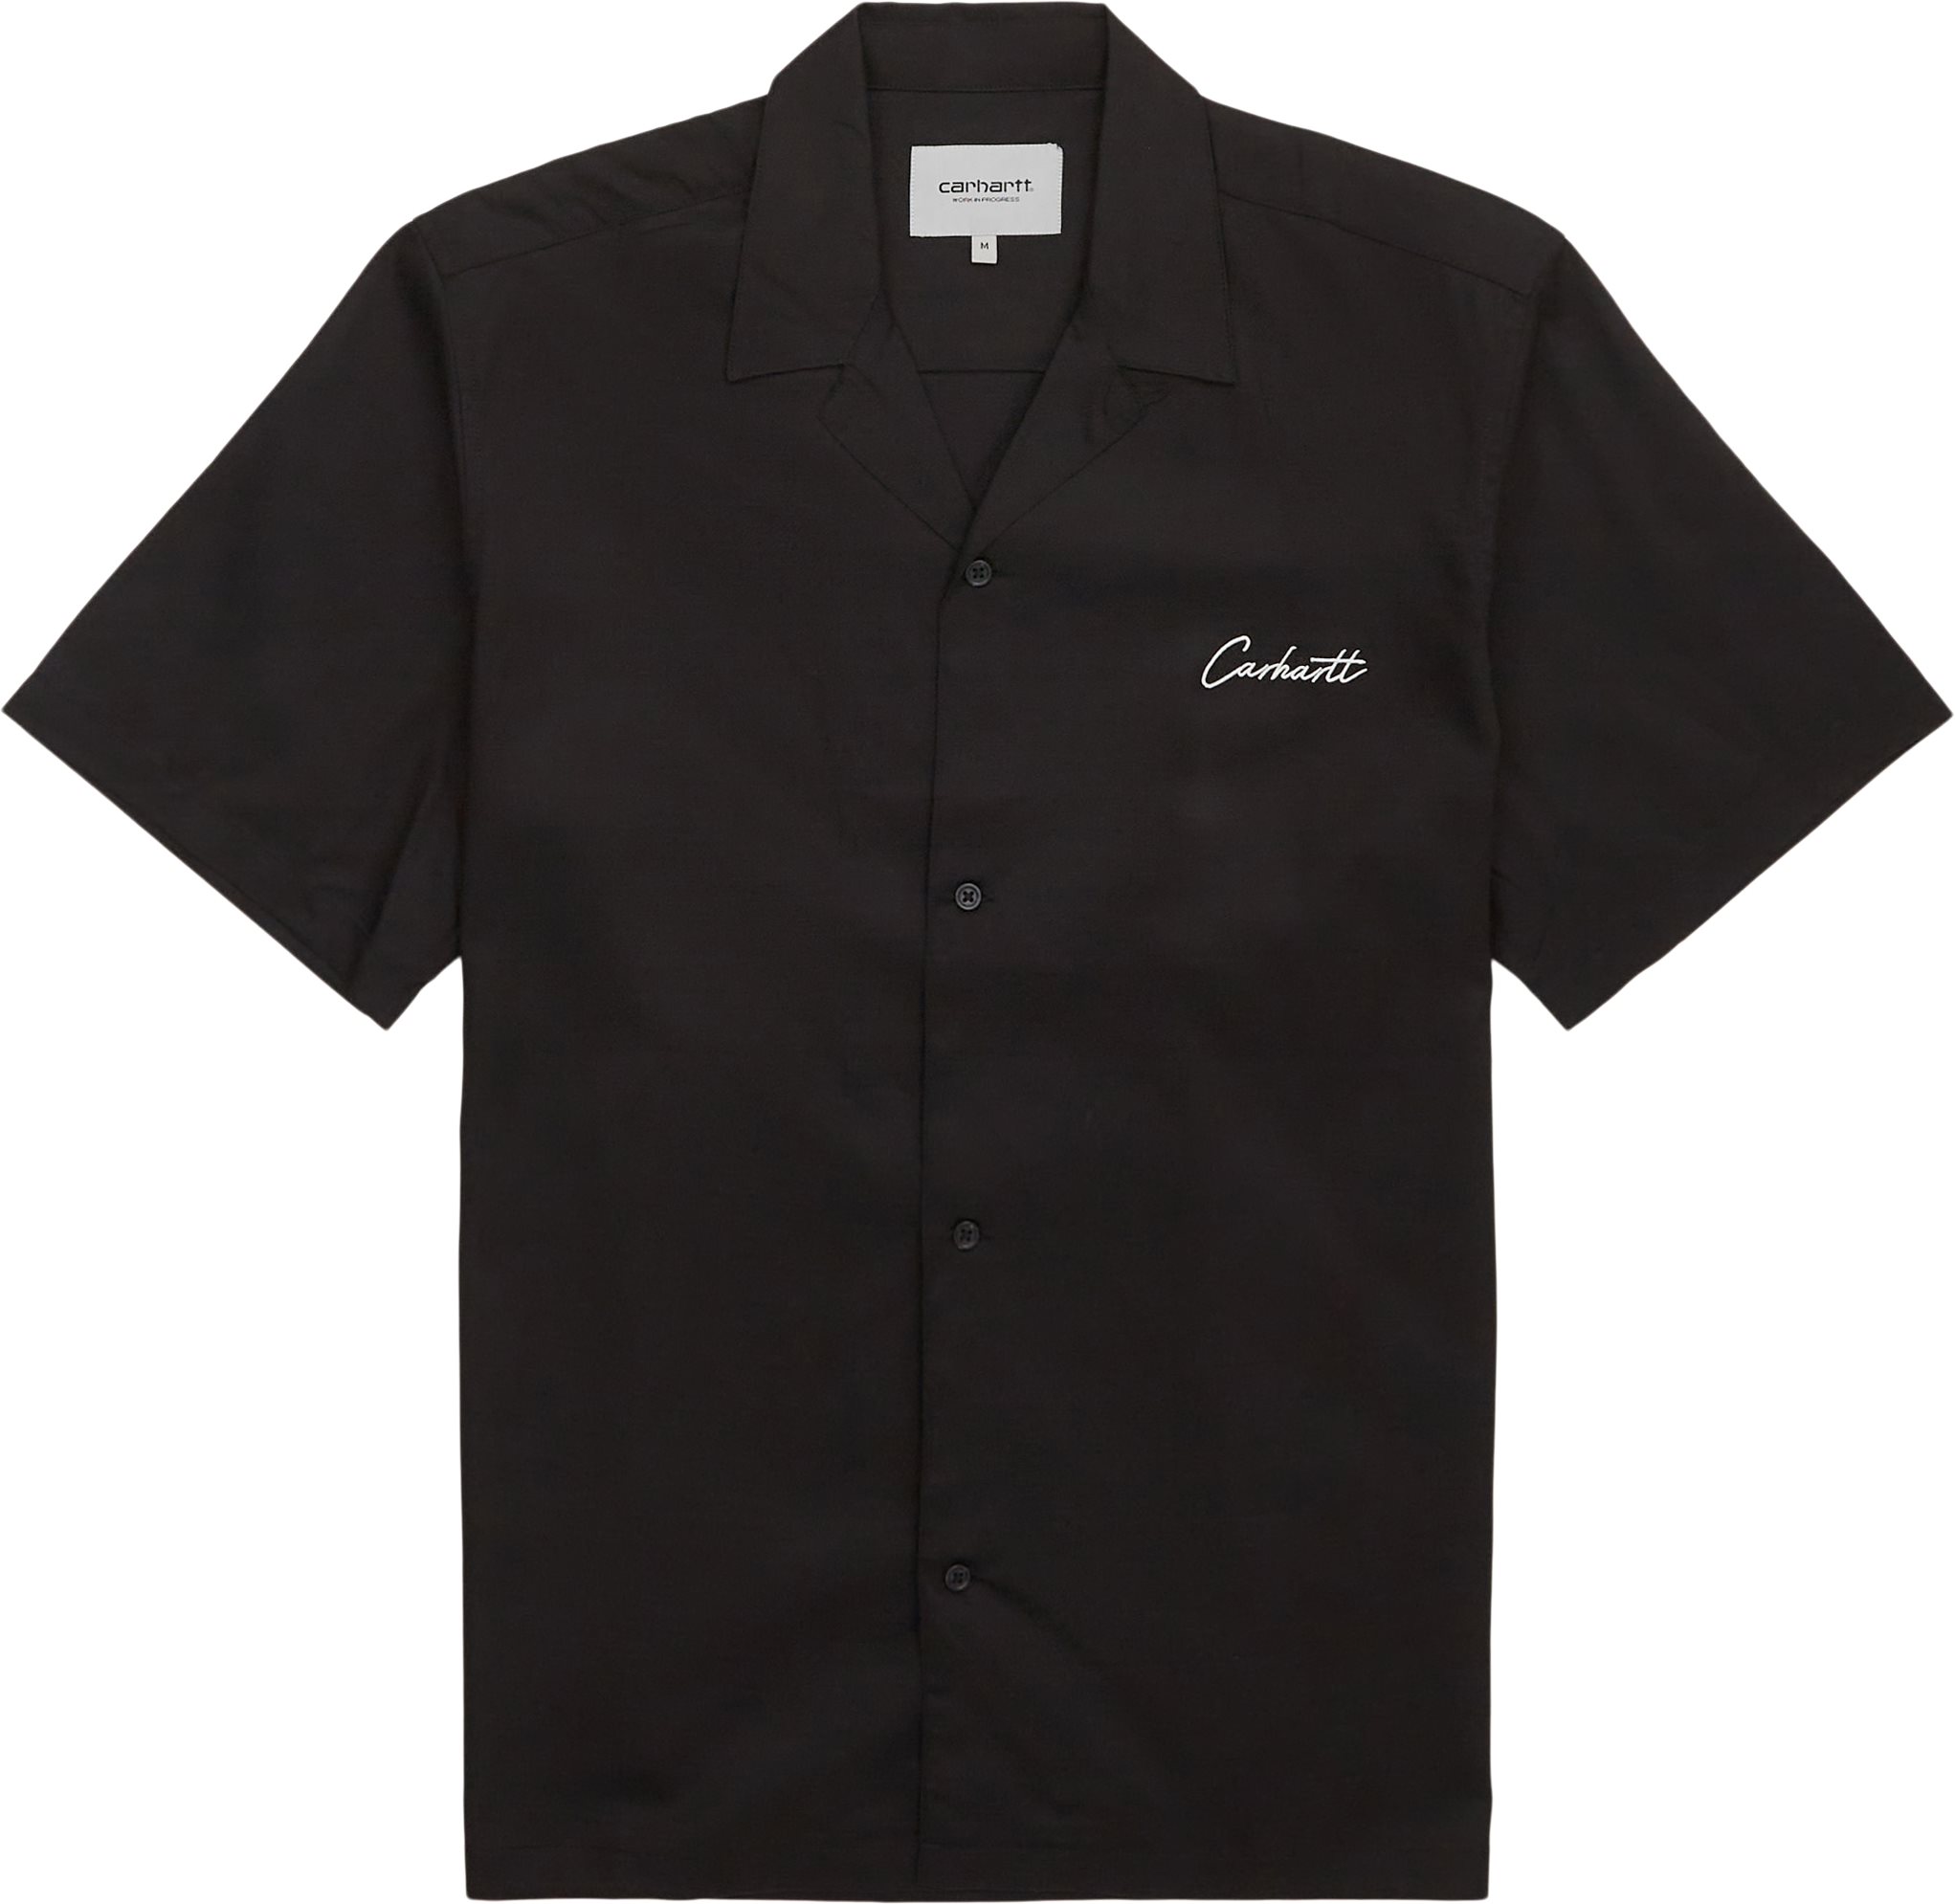 Carhartt WIP Shirts S/S DELRAY SHIRT I031465 Black